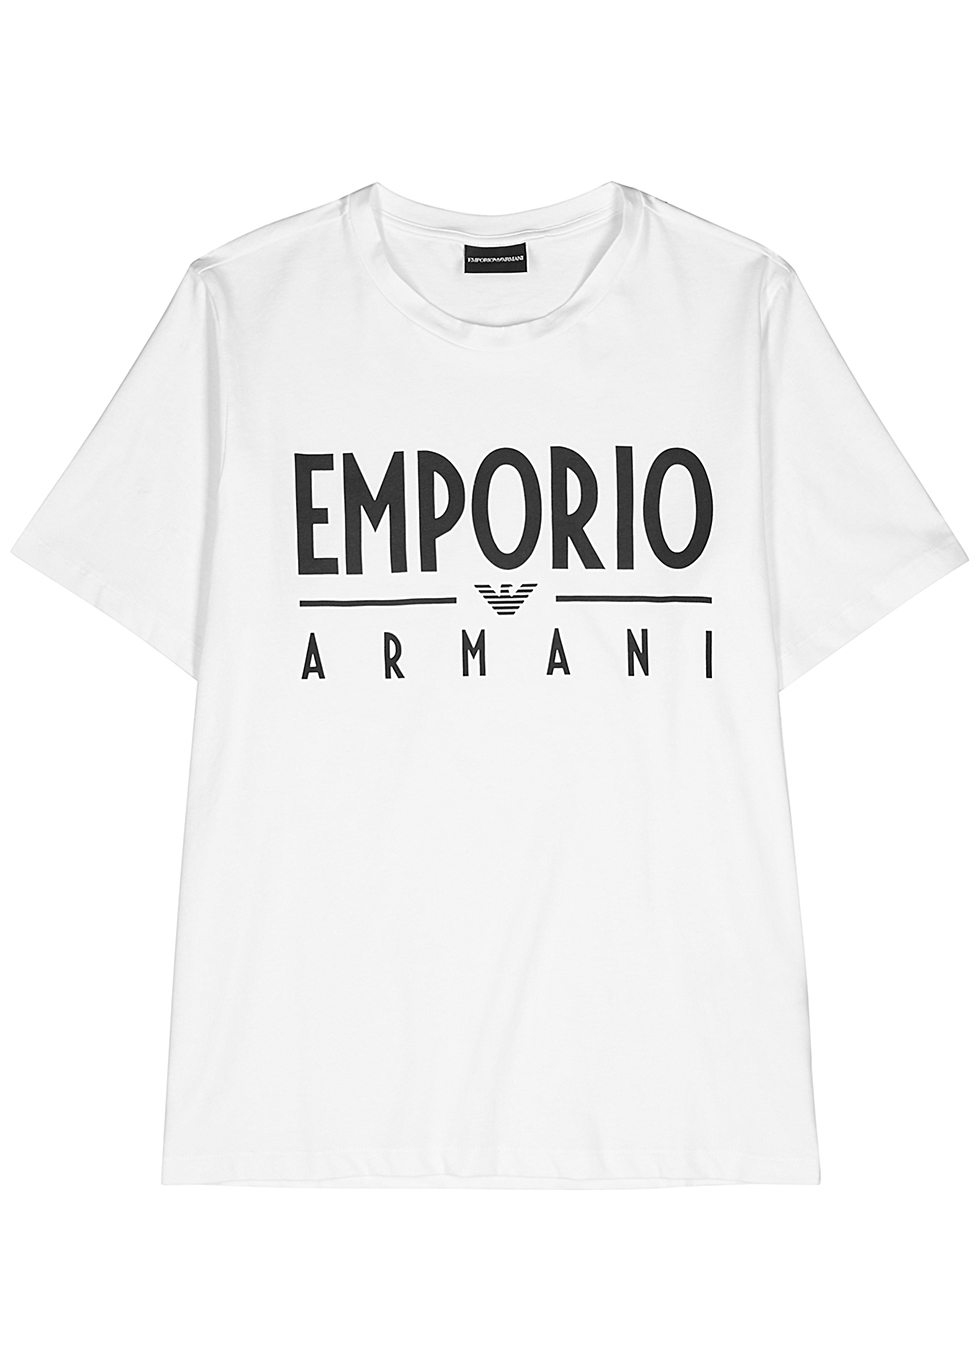 armani collection shirt